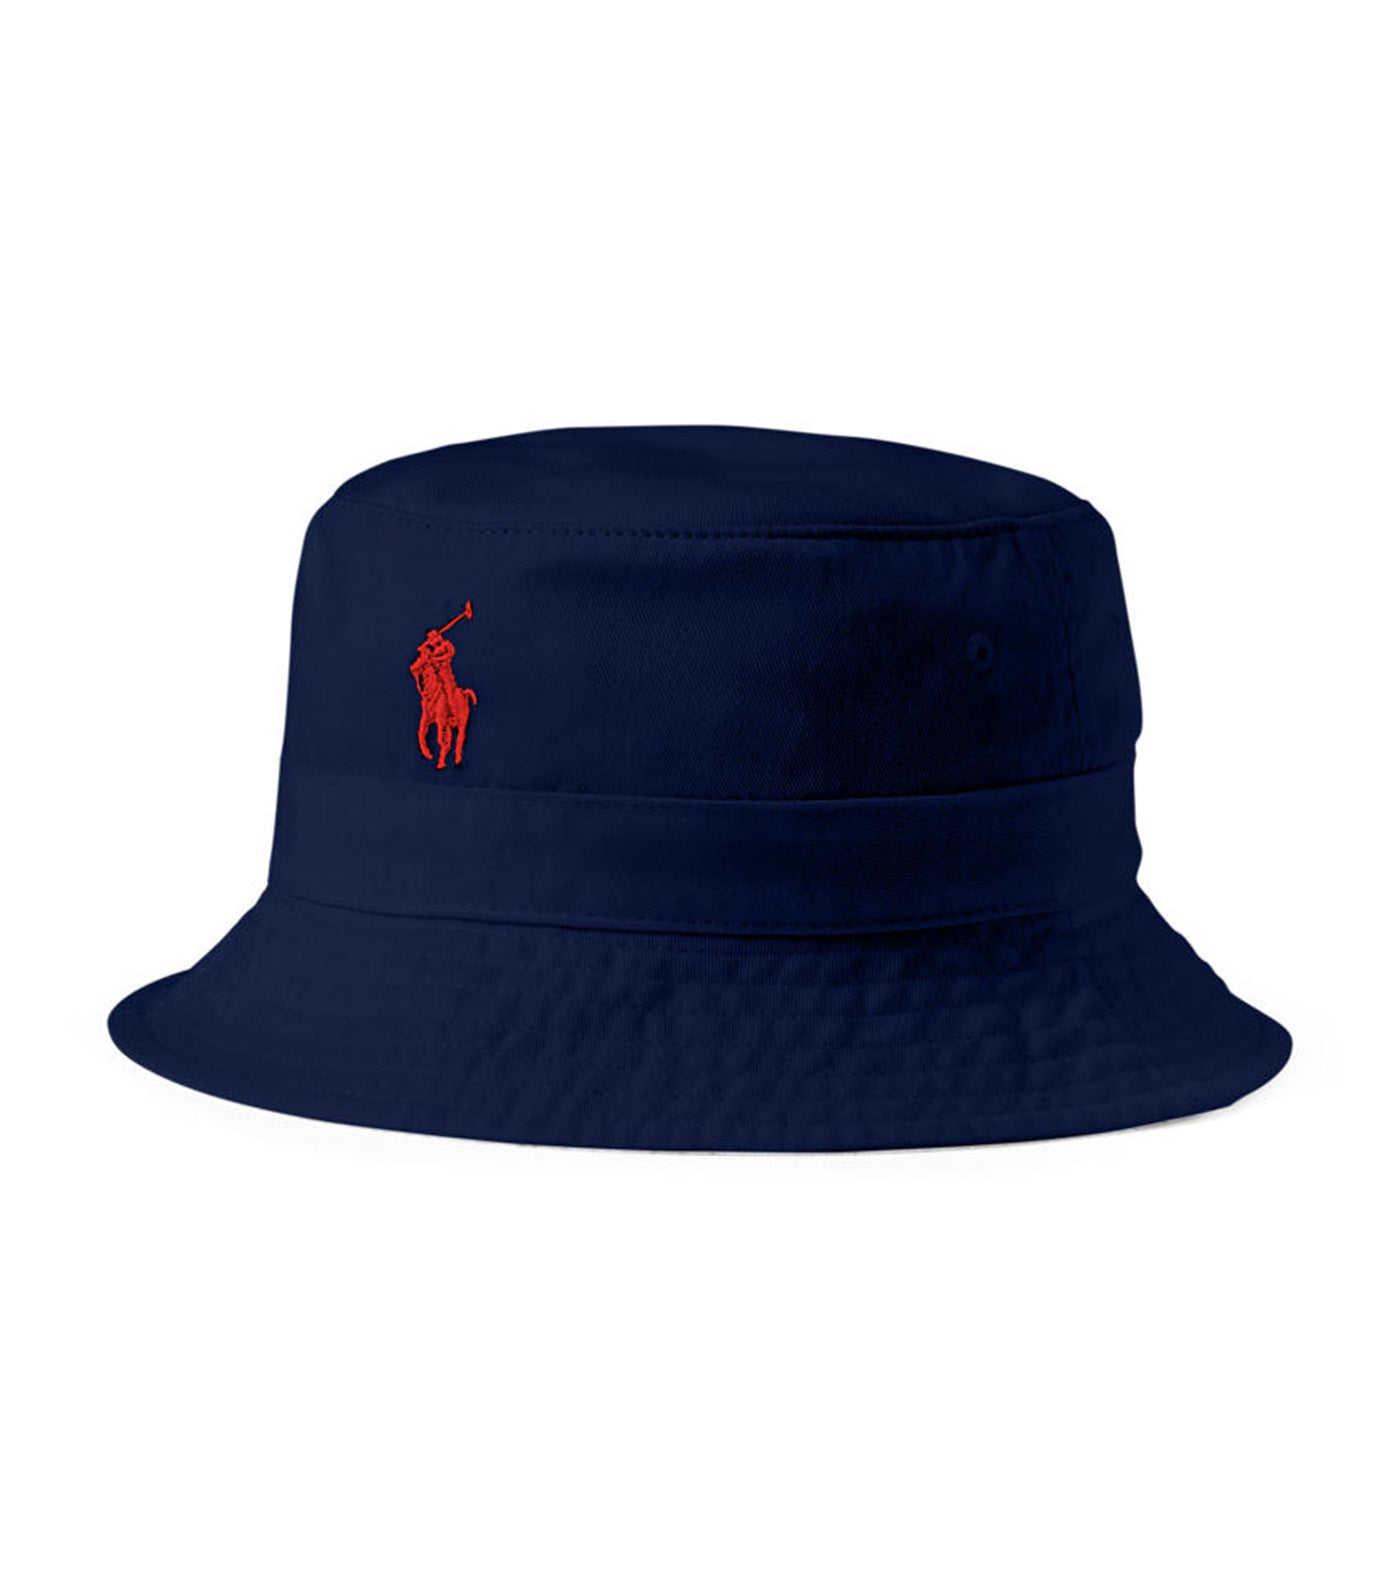 Men's Cotton Bucket Hat Newport Navy